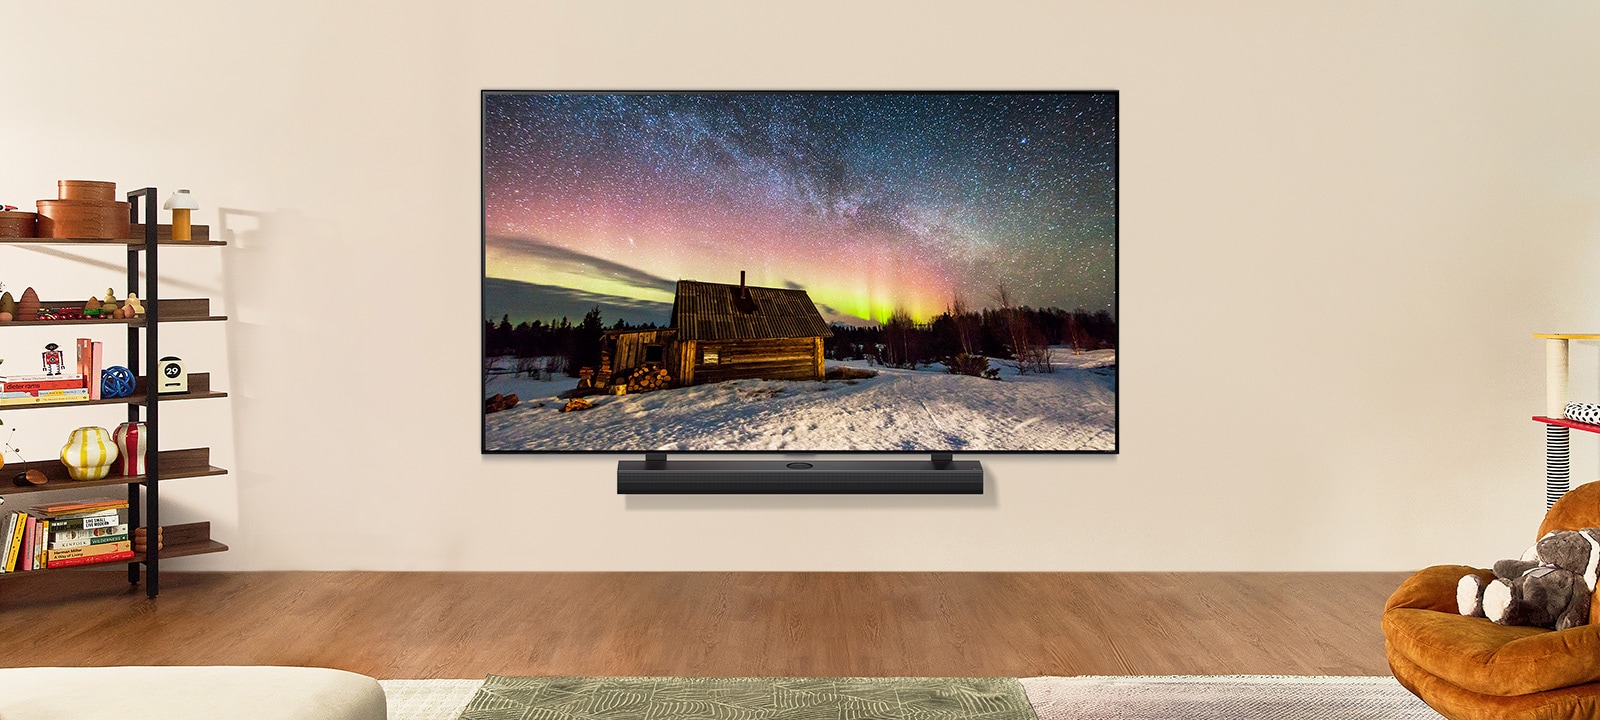 Le TV LG et la barre de son LG* dans un espace de vie moderne de jour. L’image à l’écran d’une aurore boréale est affichée, avec des niveaux de luminosité idéals.